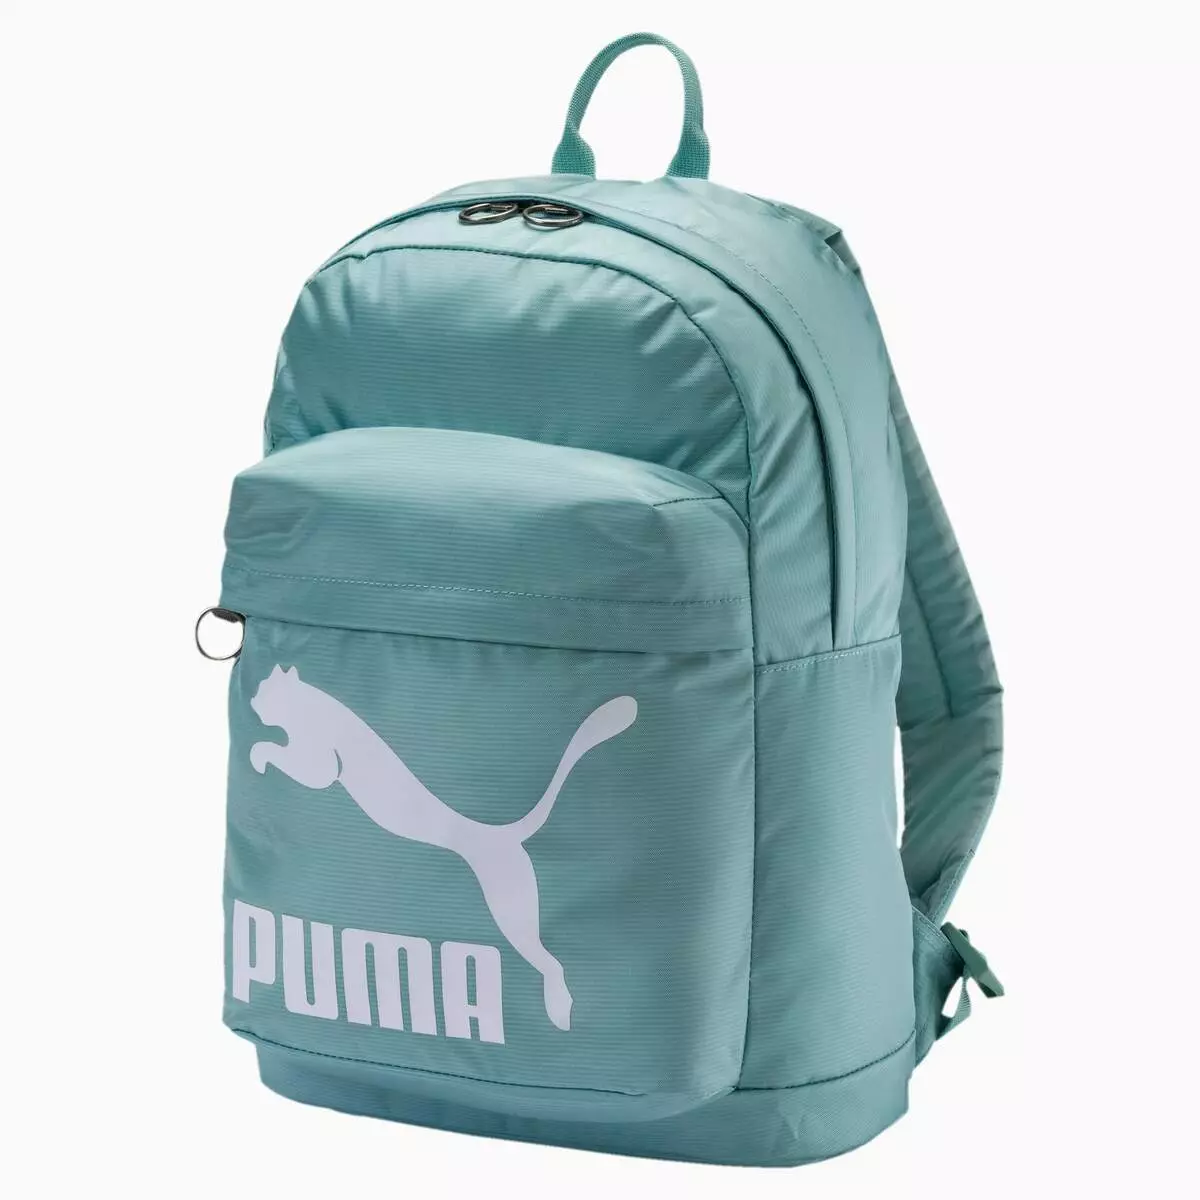 Puma hátizsákok: Nő és férfi, fekete, rózsaszín, bőr sport, kerek és egyéb eredeti modellek. Hogyan kell mosni? 15396_44